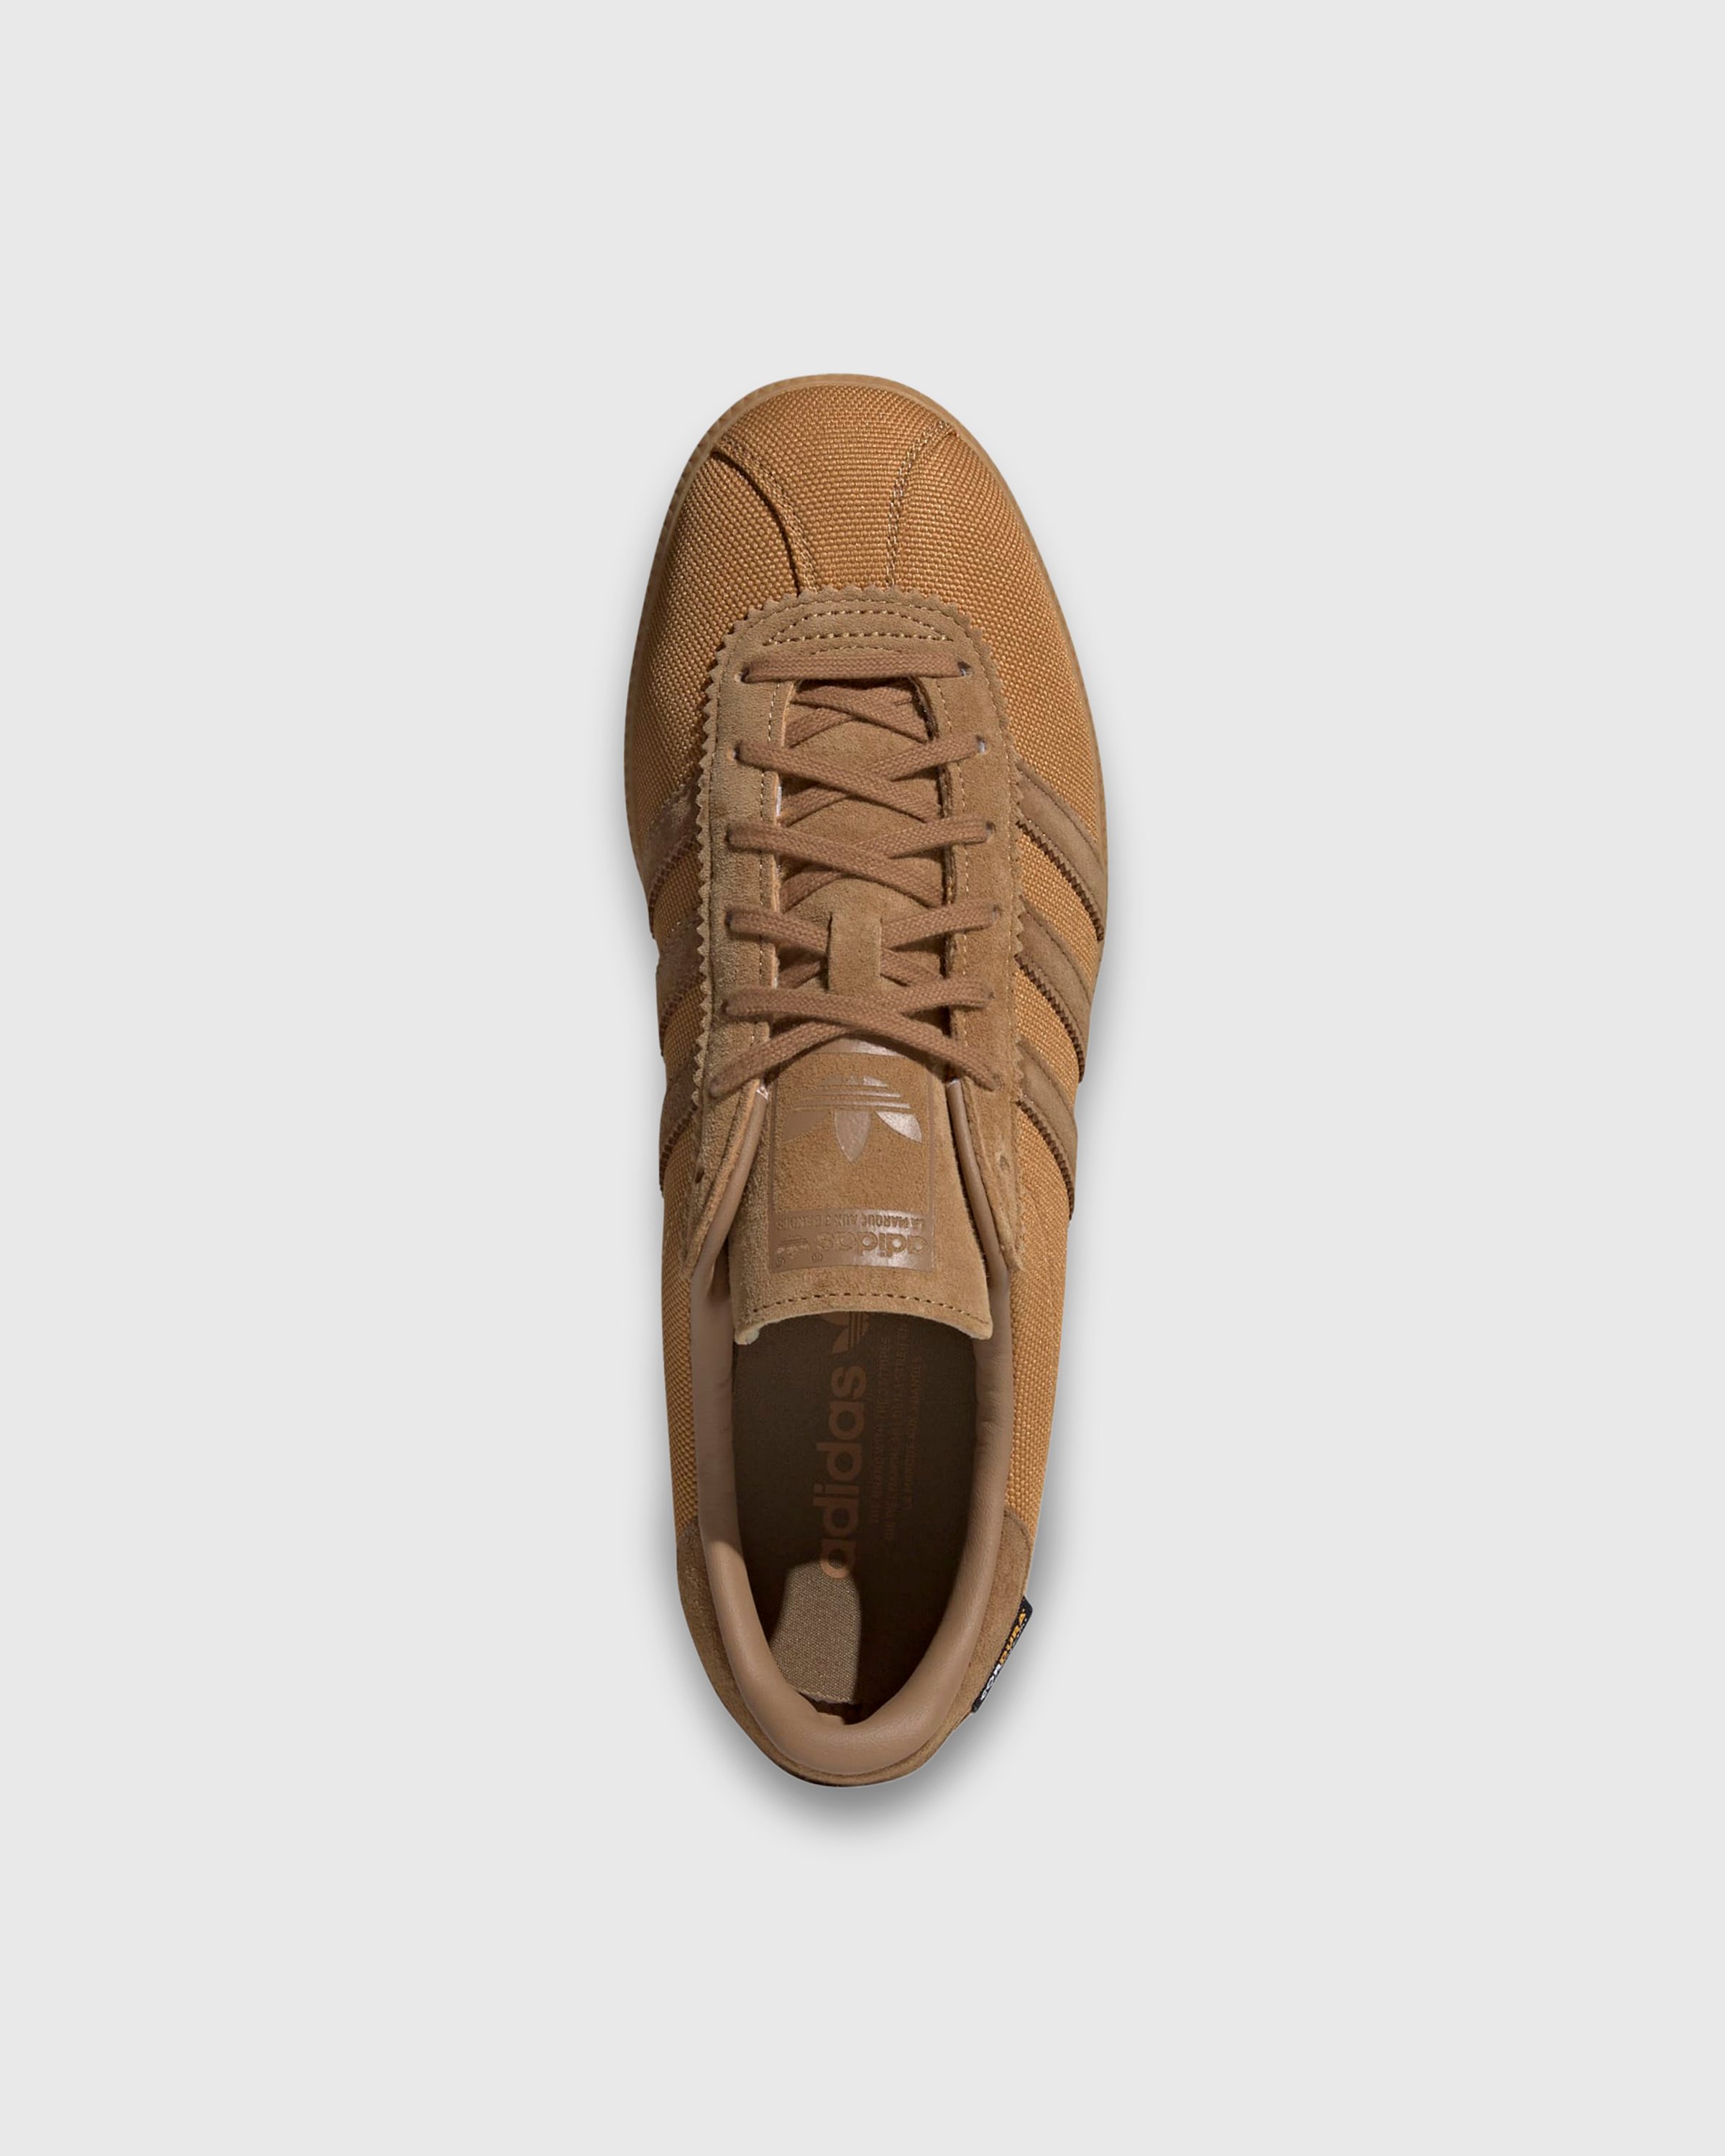 Adidas - BERMUDA             MESA/BRNDES/GUM3 - Footwear - Beige - Image 5